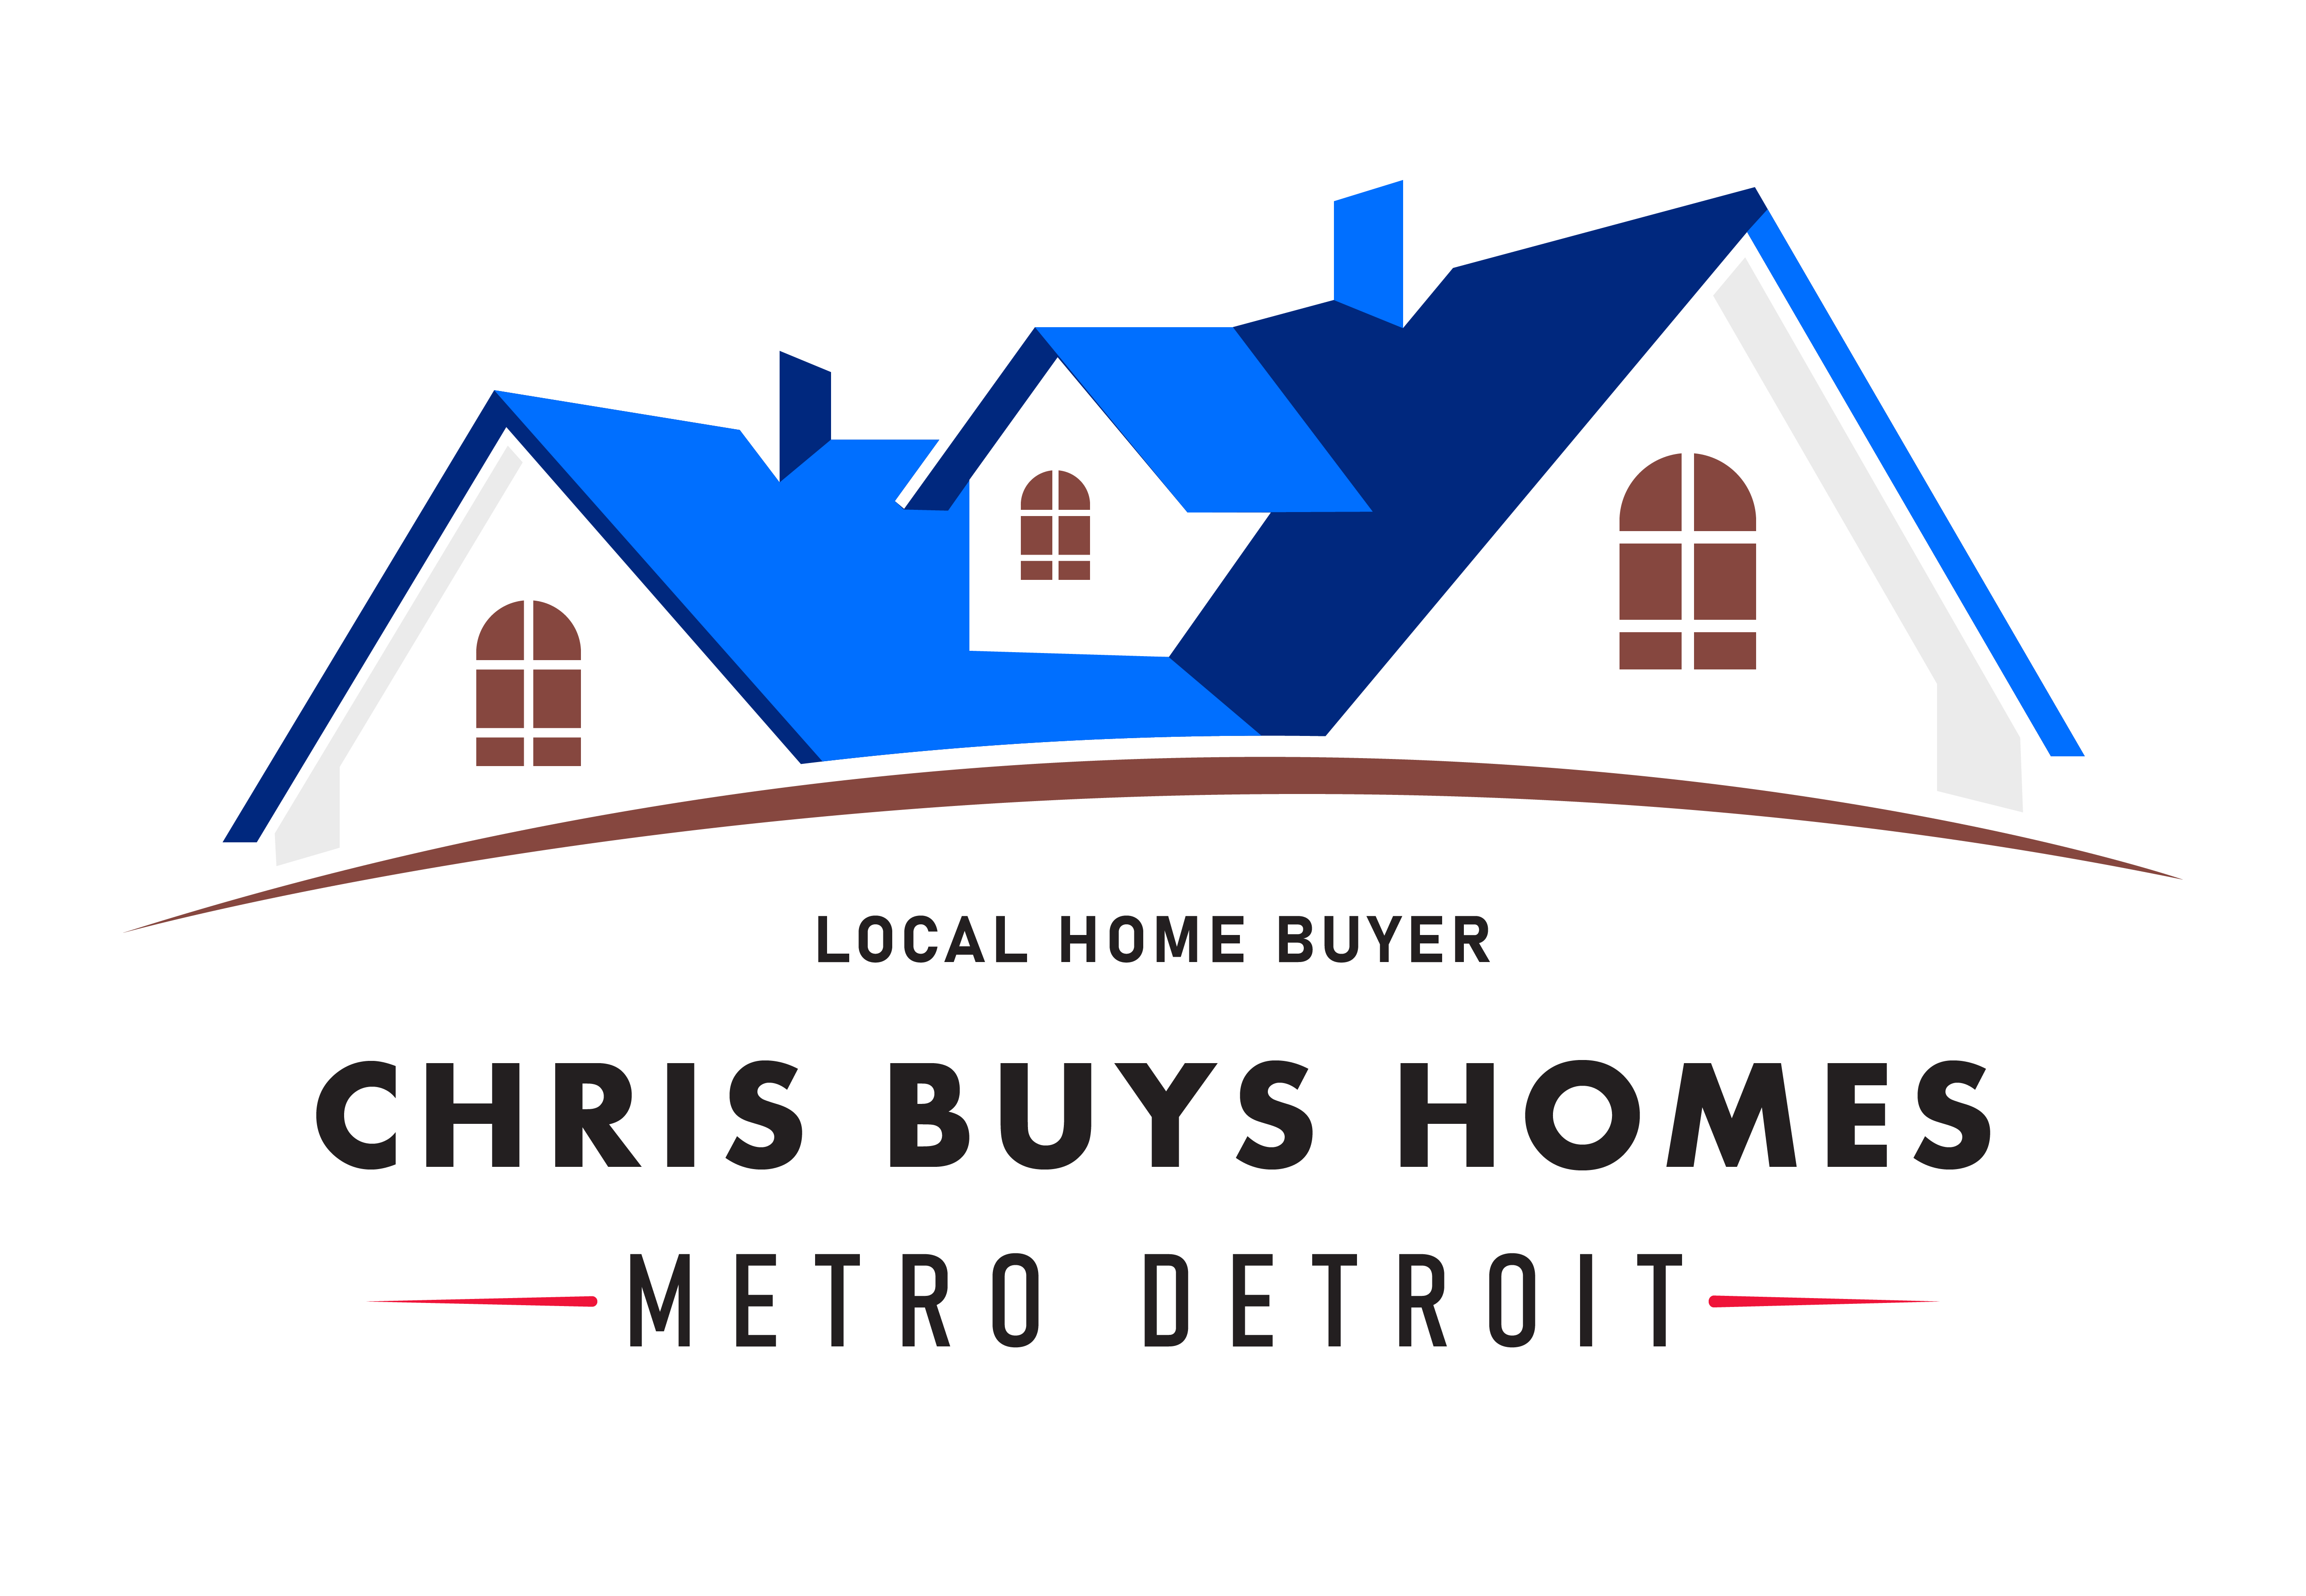 Chris Buys Homes in Metro Detroit logo